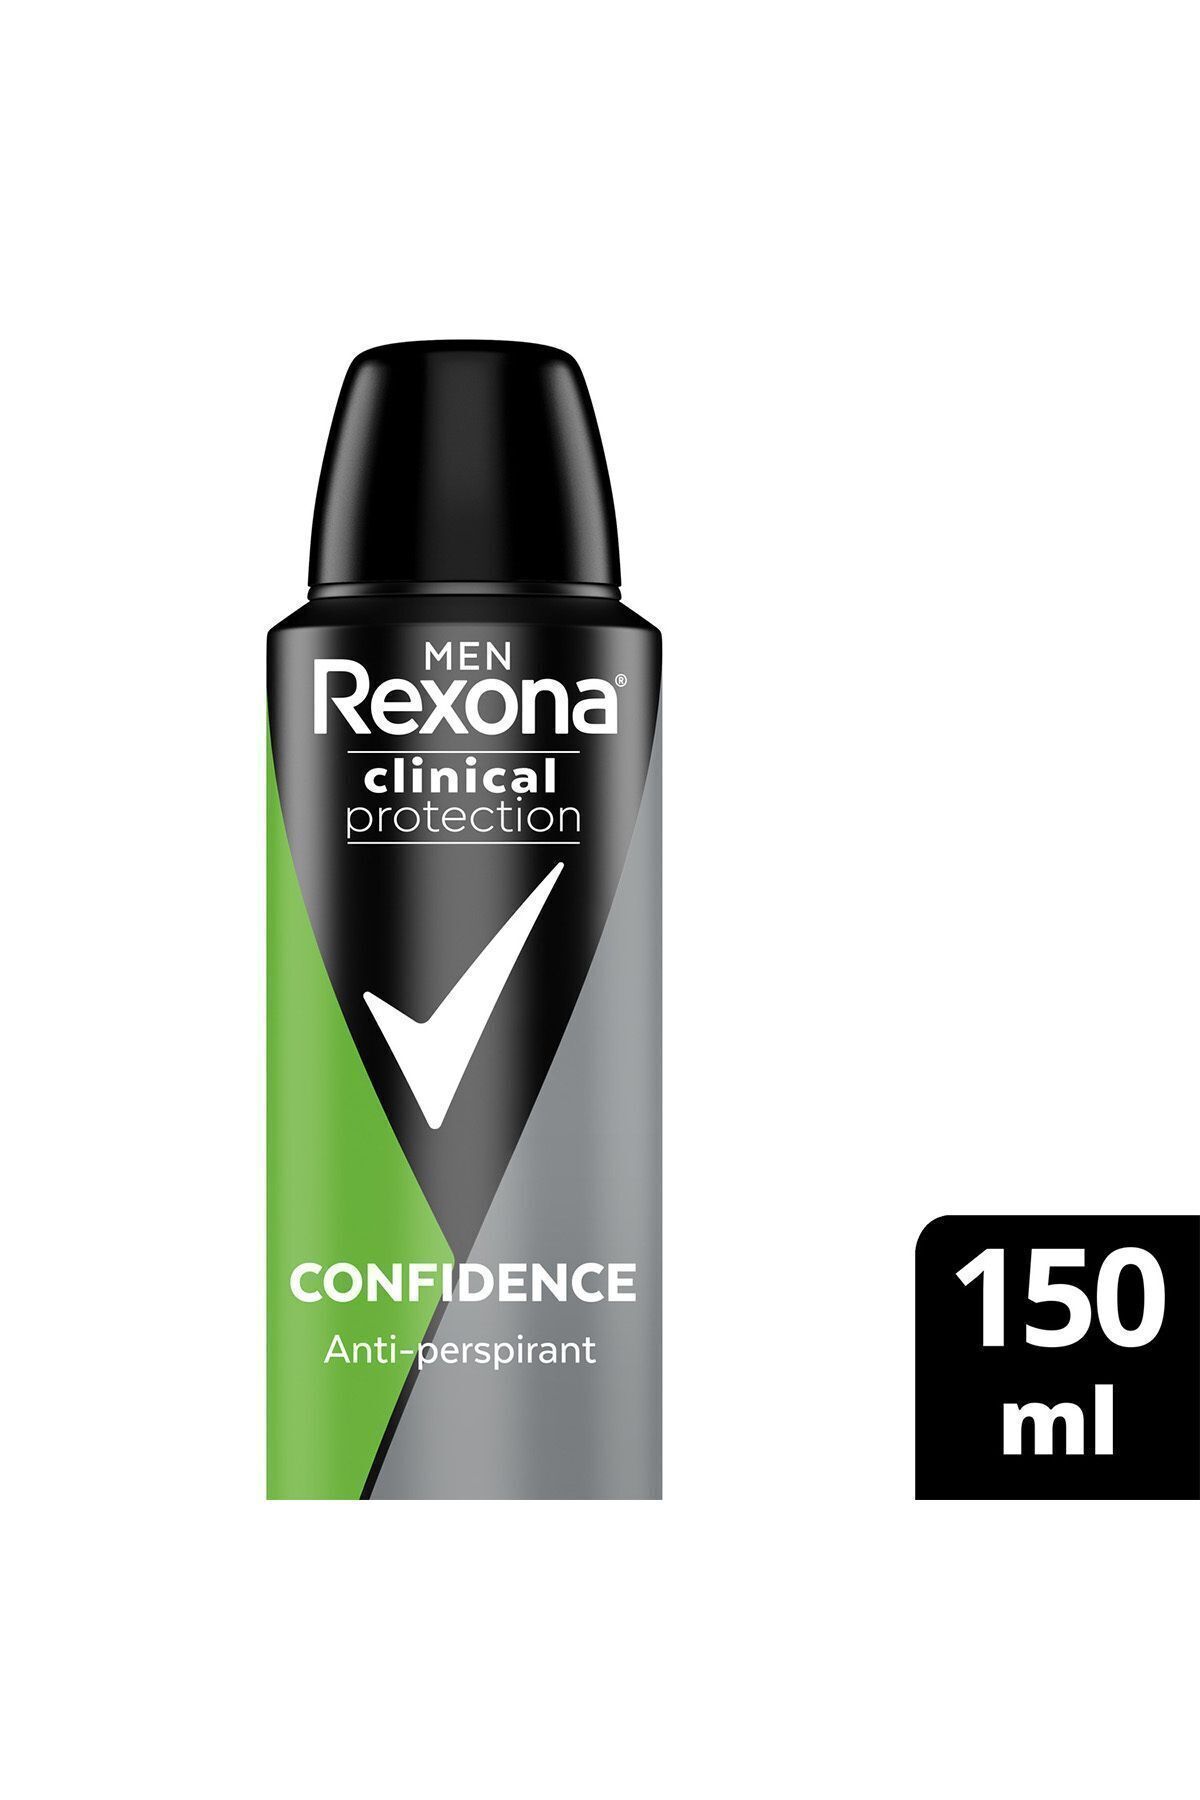 Rexona Men Clinical Protection Erkek Sprey Deodorant Confidence 96 Saat Koruma 150 ml